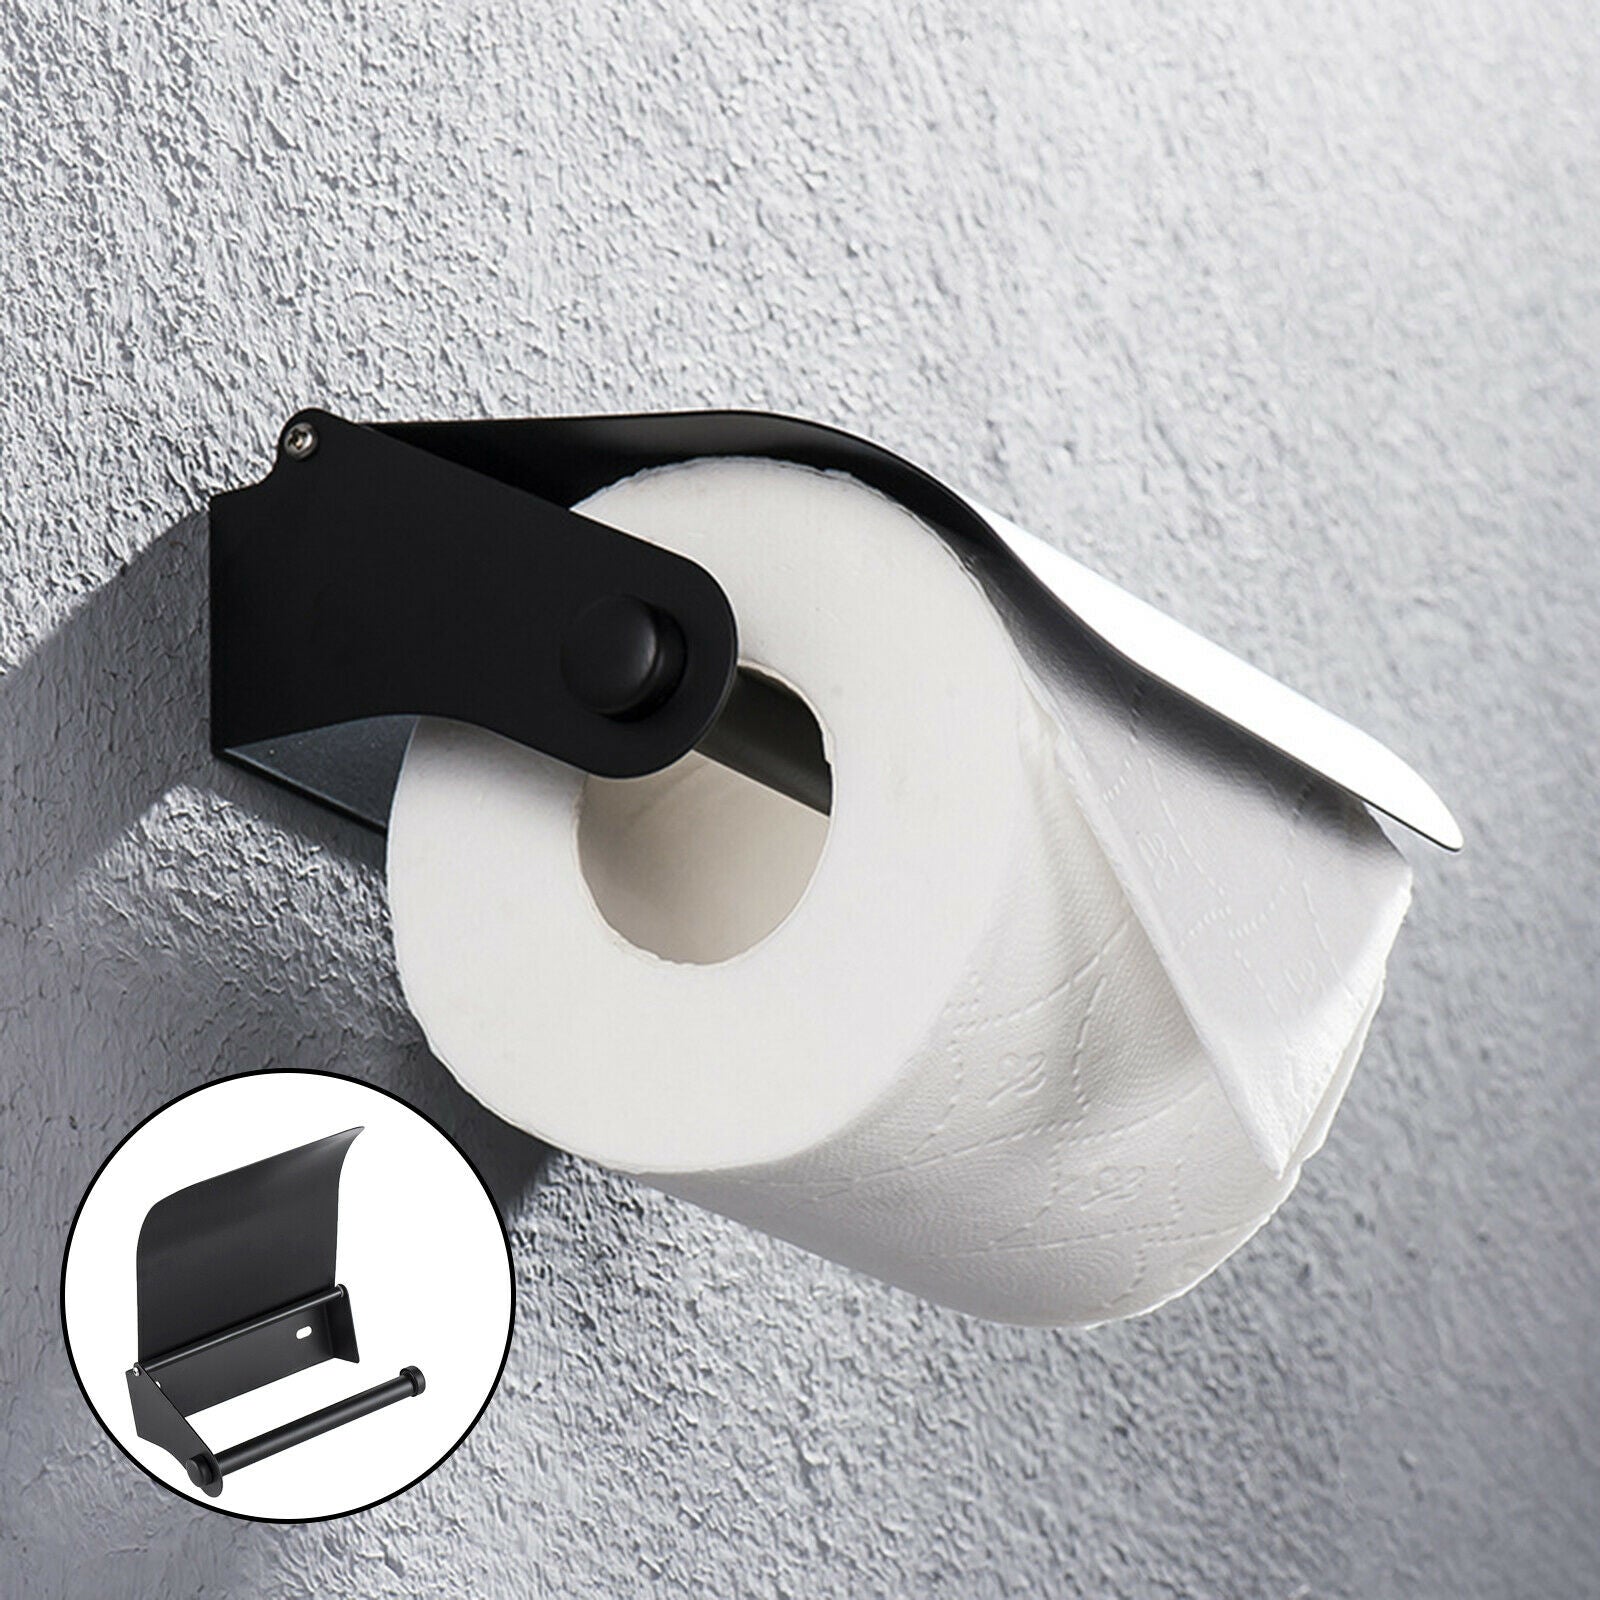 Stainless Black Toilet Roll Paper Holder Tissue Shelf Single Roll